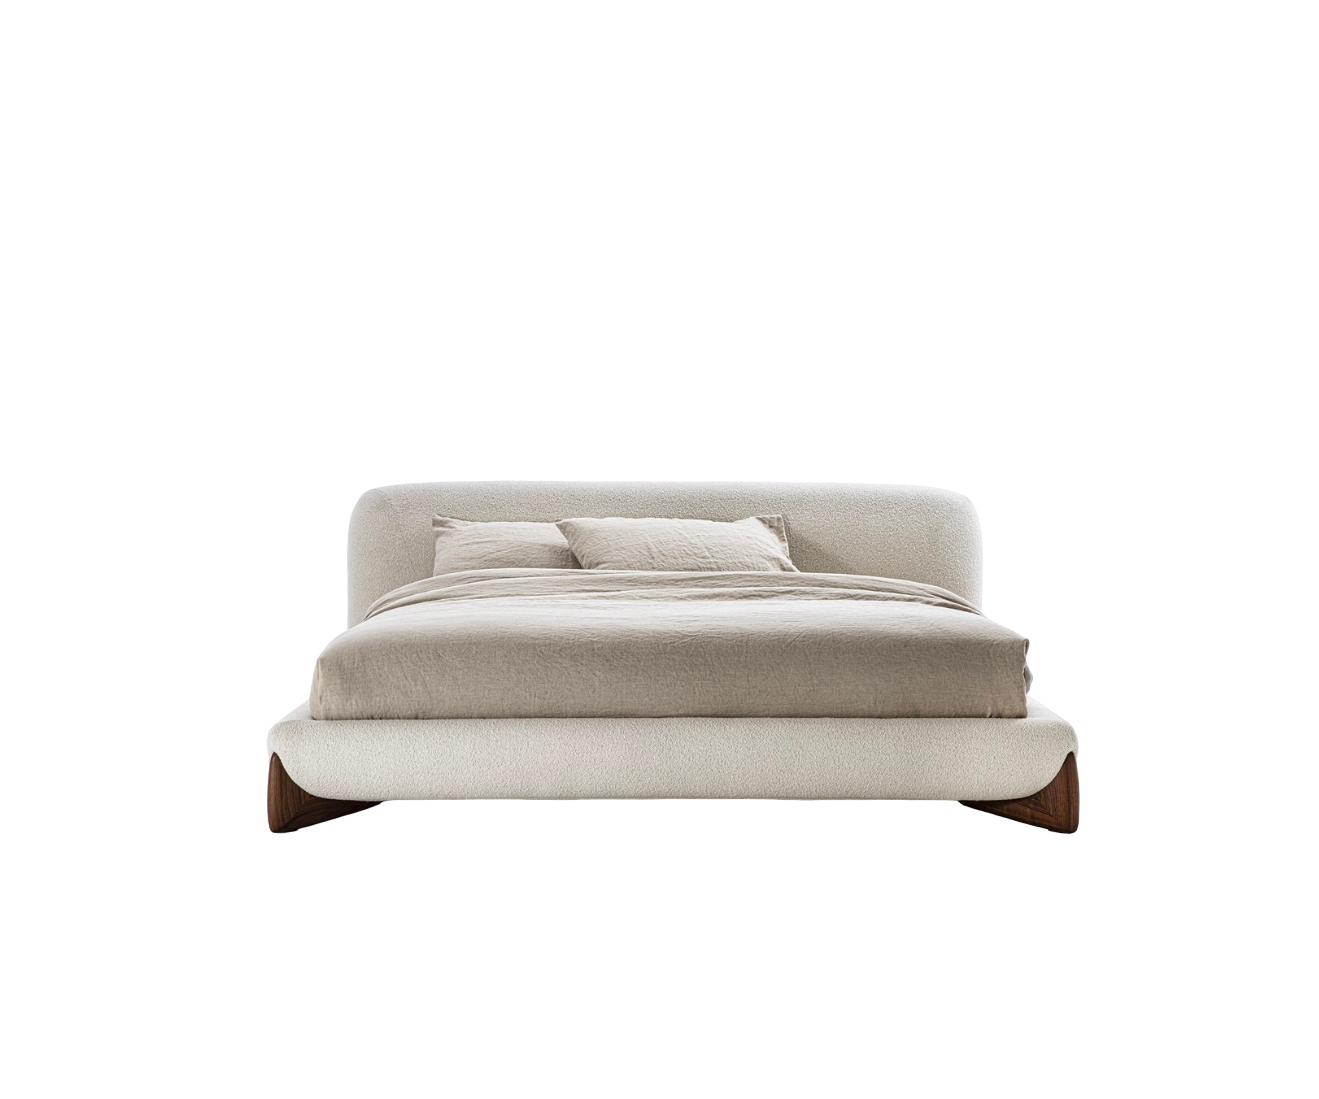 Softbay Bed I Porada